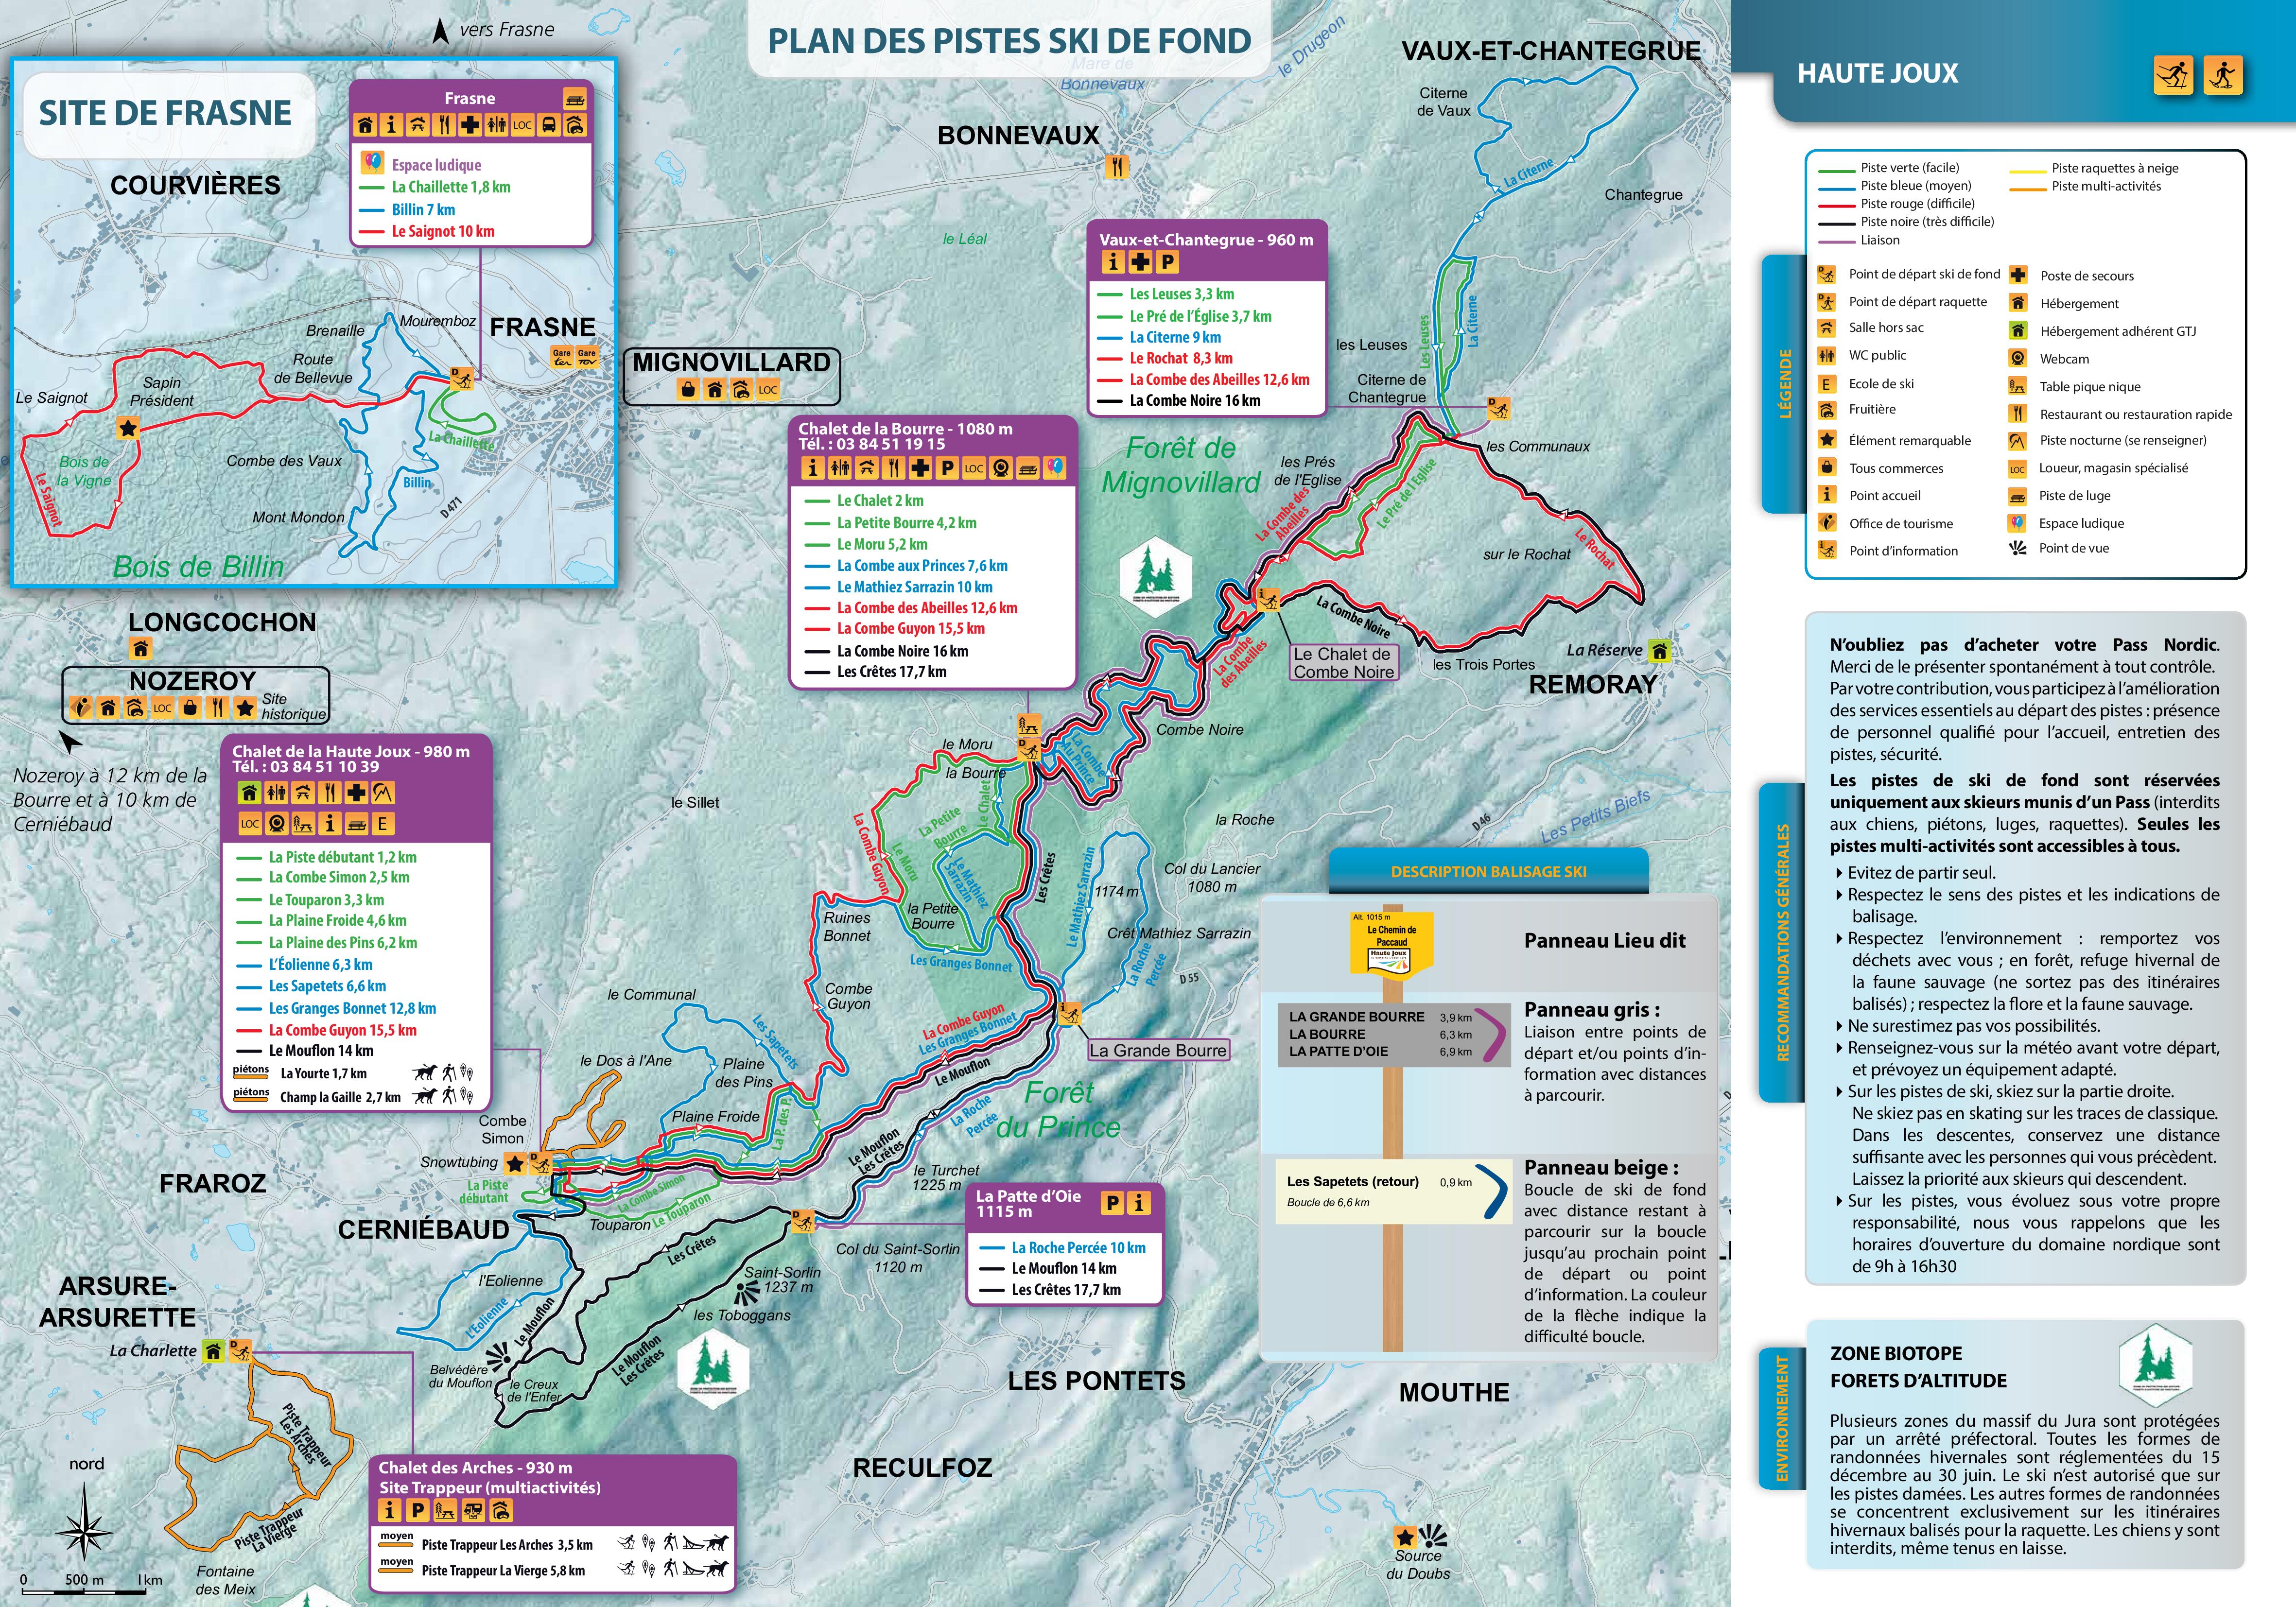 Plan des pistes ski de fond Haute Joux 